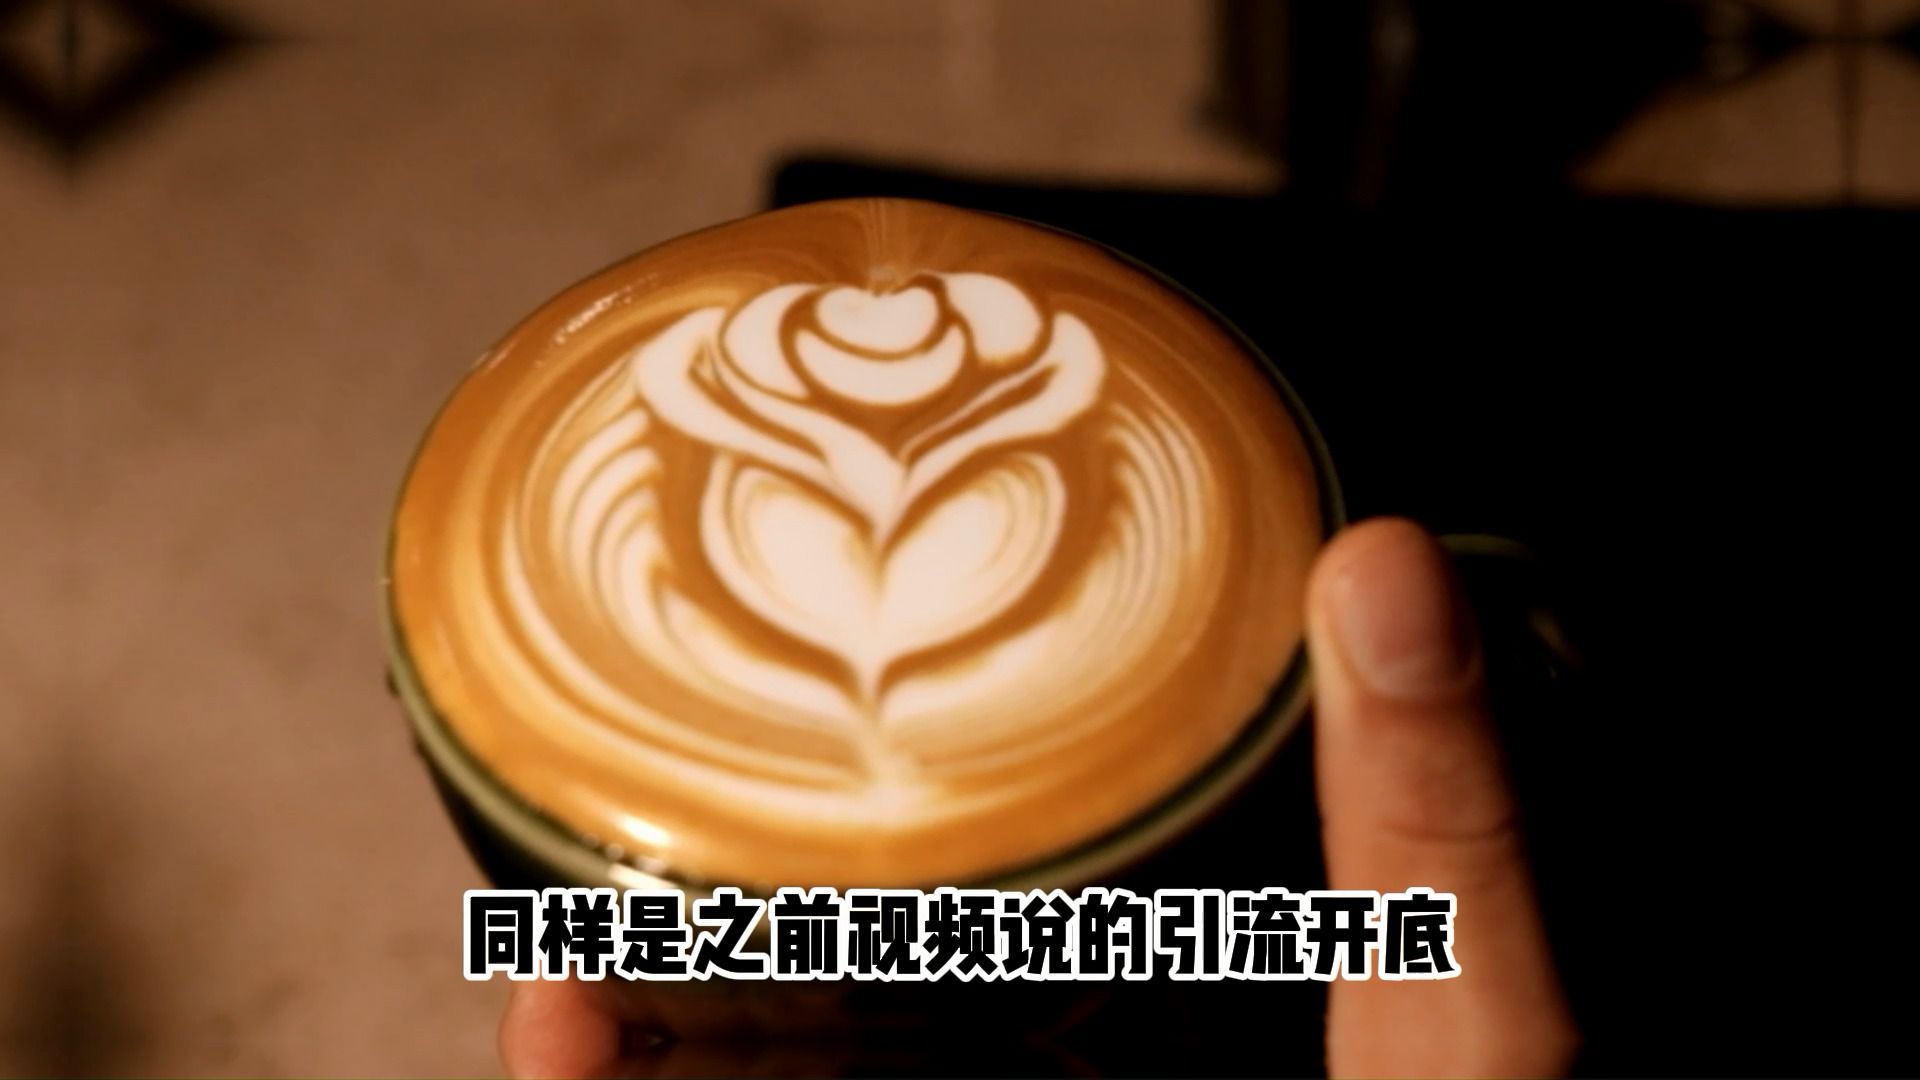 咖啡拉花图案名称图片